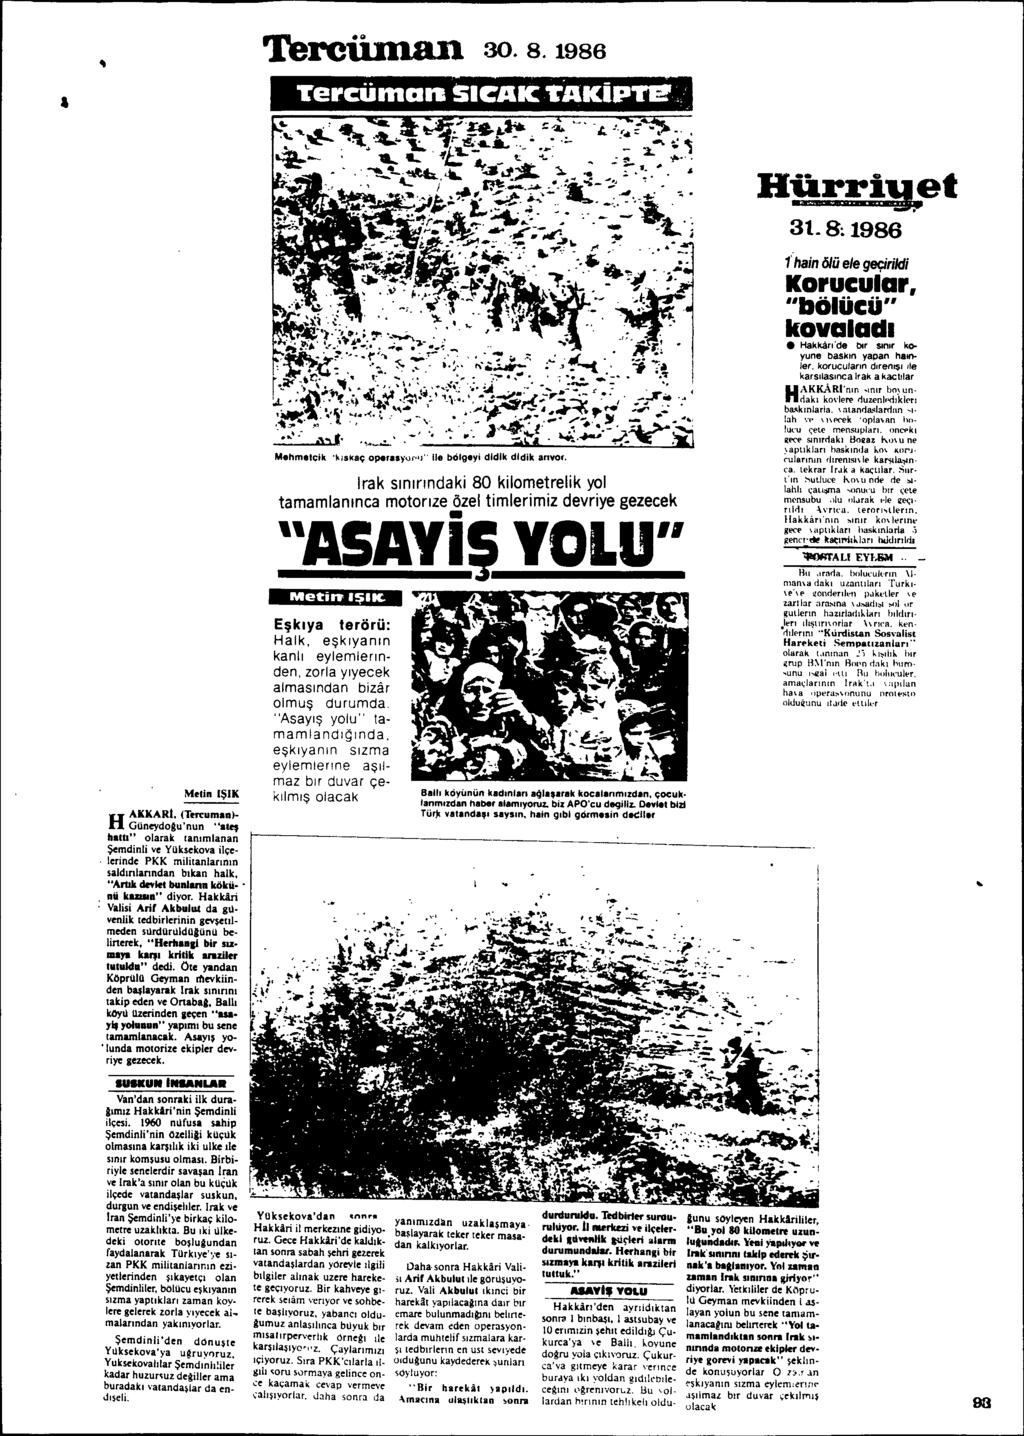 Terciiman 30.8.1986 Hfarri~et 3t.8~1986 Melin I~IK H AKKARI. (Ten:uman)- Güneydogu'nun "alef hatb" olarak ranlmlanan Semdinli ve Yüksekova ilçelerinde PKK militanlannlo sald.